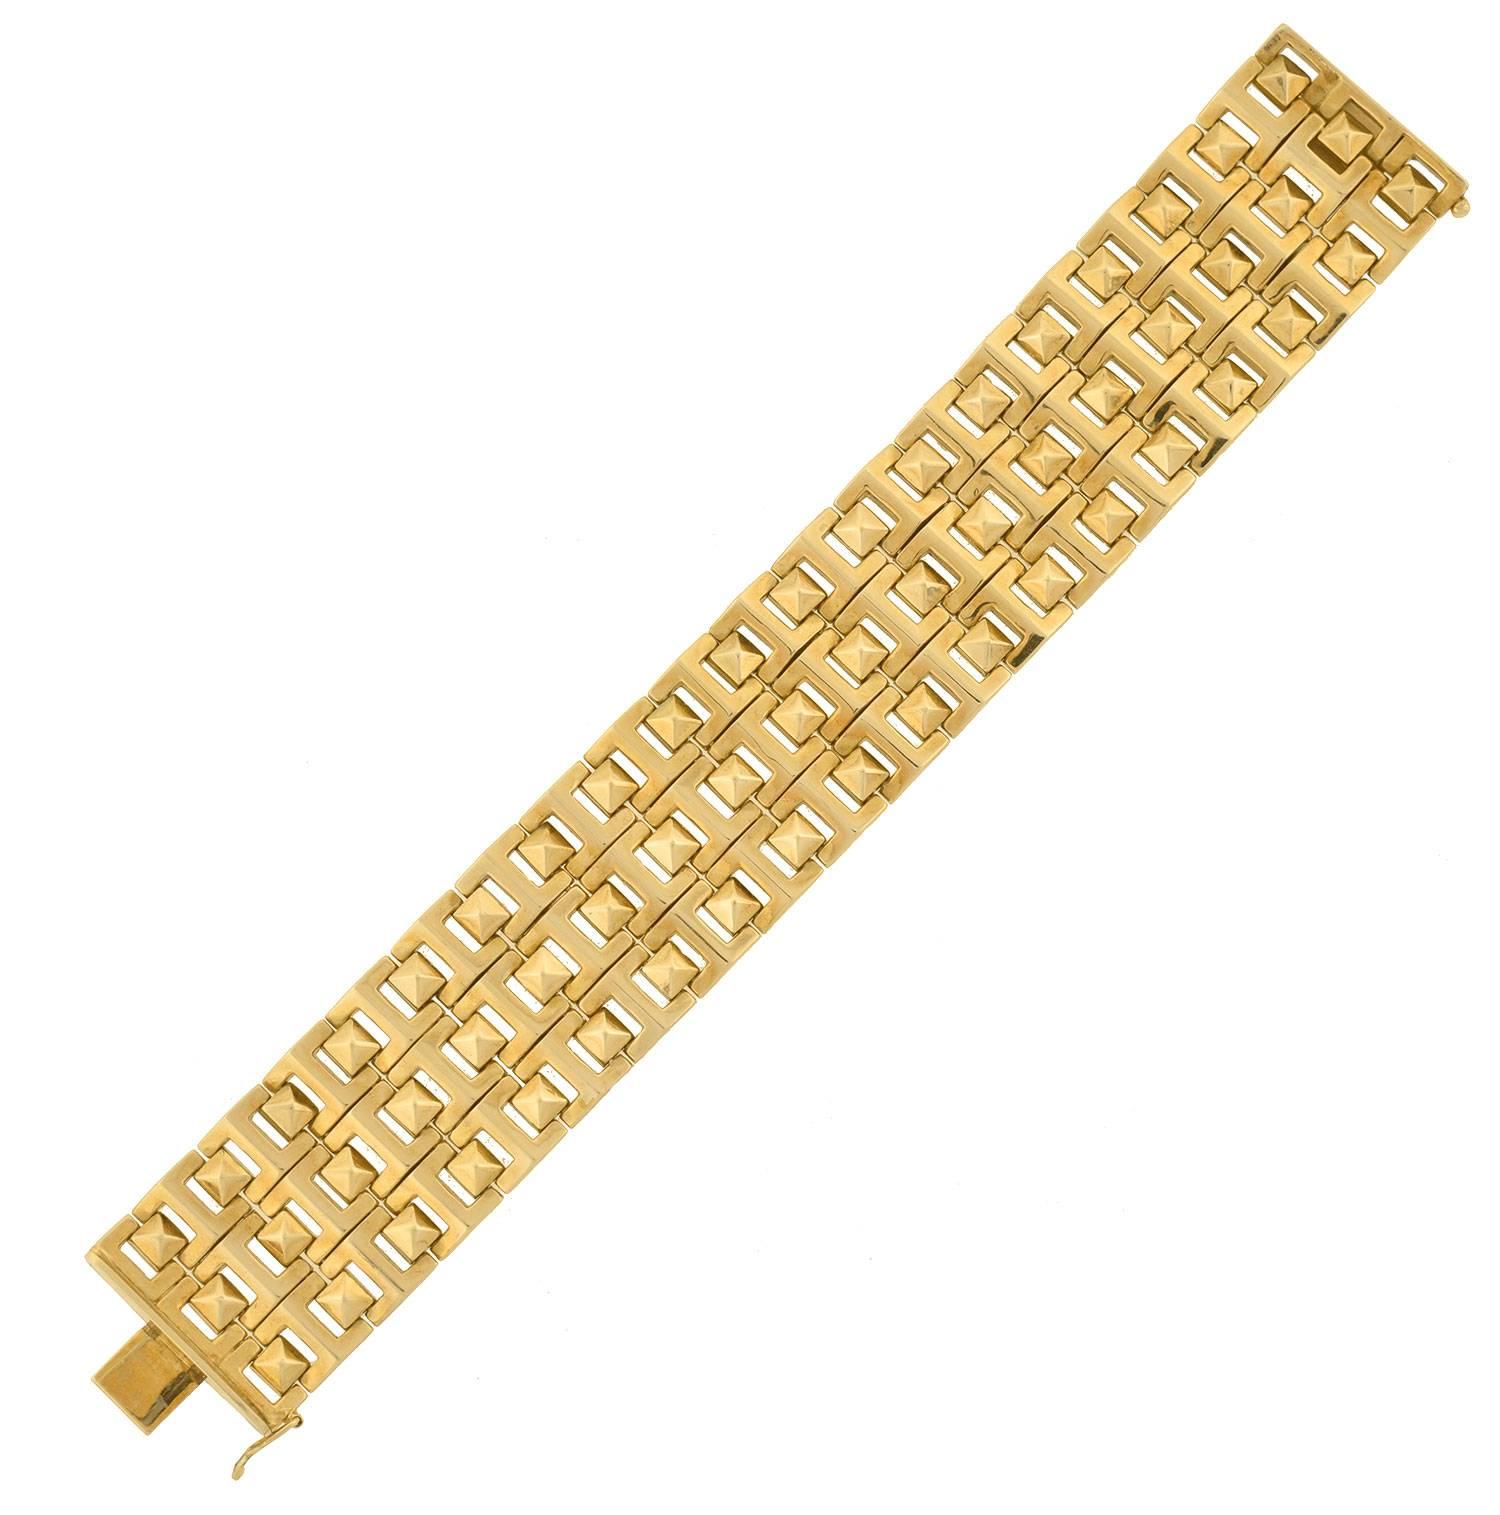 Ce fabuleux bracelet de propriété est une pièce très élégante et moderne ! Réalisé en or jaune 14 carats, il présente une apparence substantielle formée par des rangées de liens articulés. Un motif de clous en forme de pyramide repose entre des